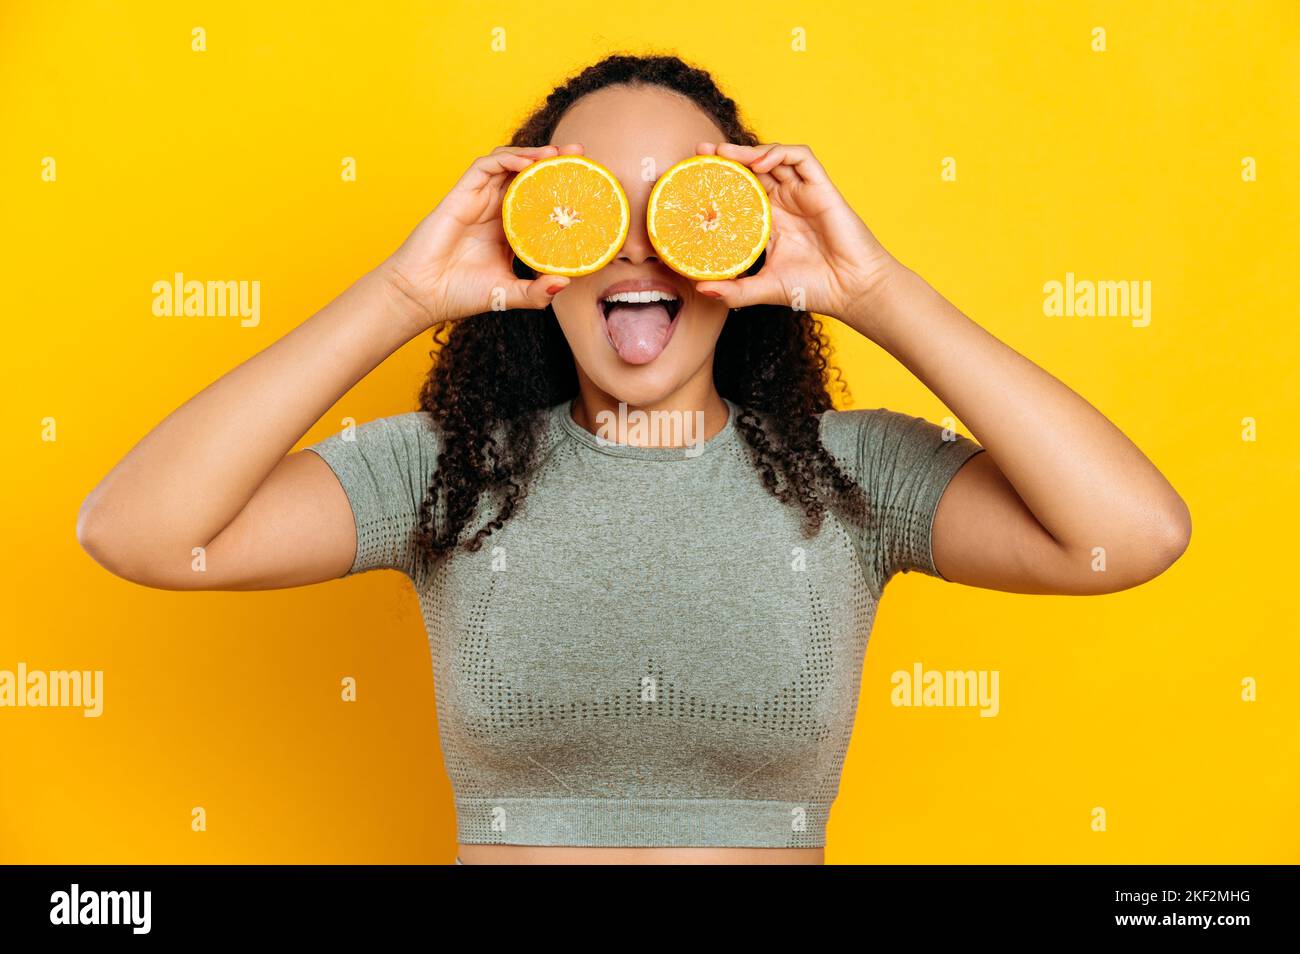 Fröhliche liebliche brasilianische oder latino junge lockige haarige Frau, in Sport-Outfits, stehend auf isoliertem orangefarbenem Hintergrund, hält zwei Hälften orange in den Händen neben den Augen, zeigt Zunge, lächelnd Stockfoto